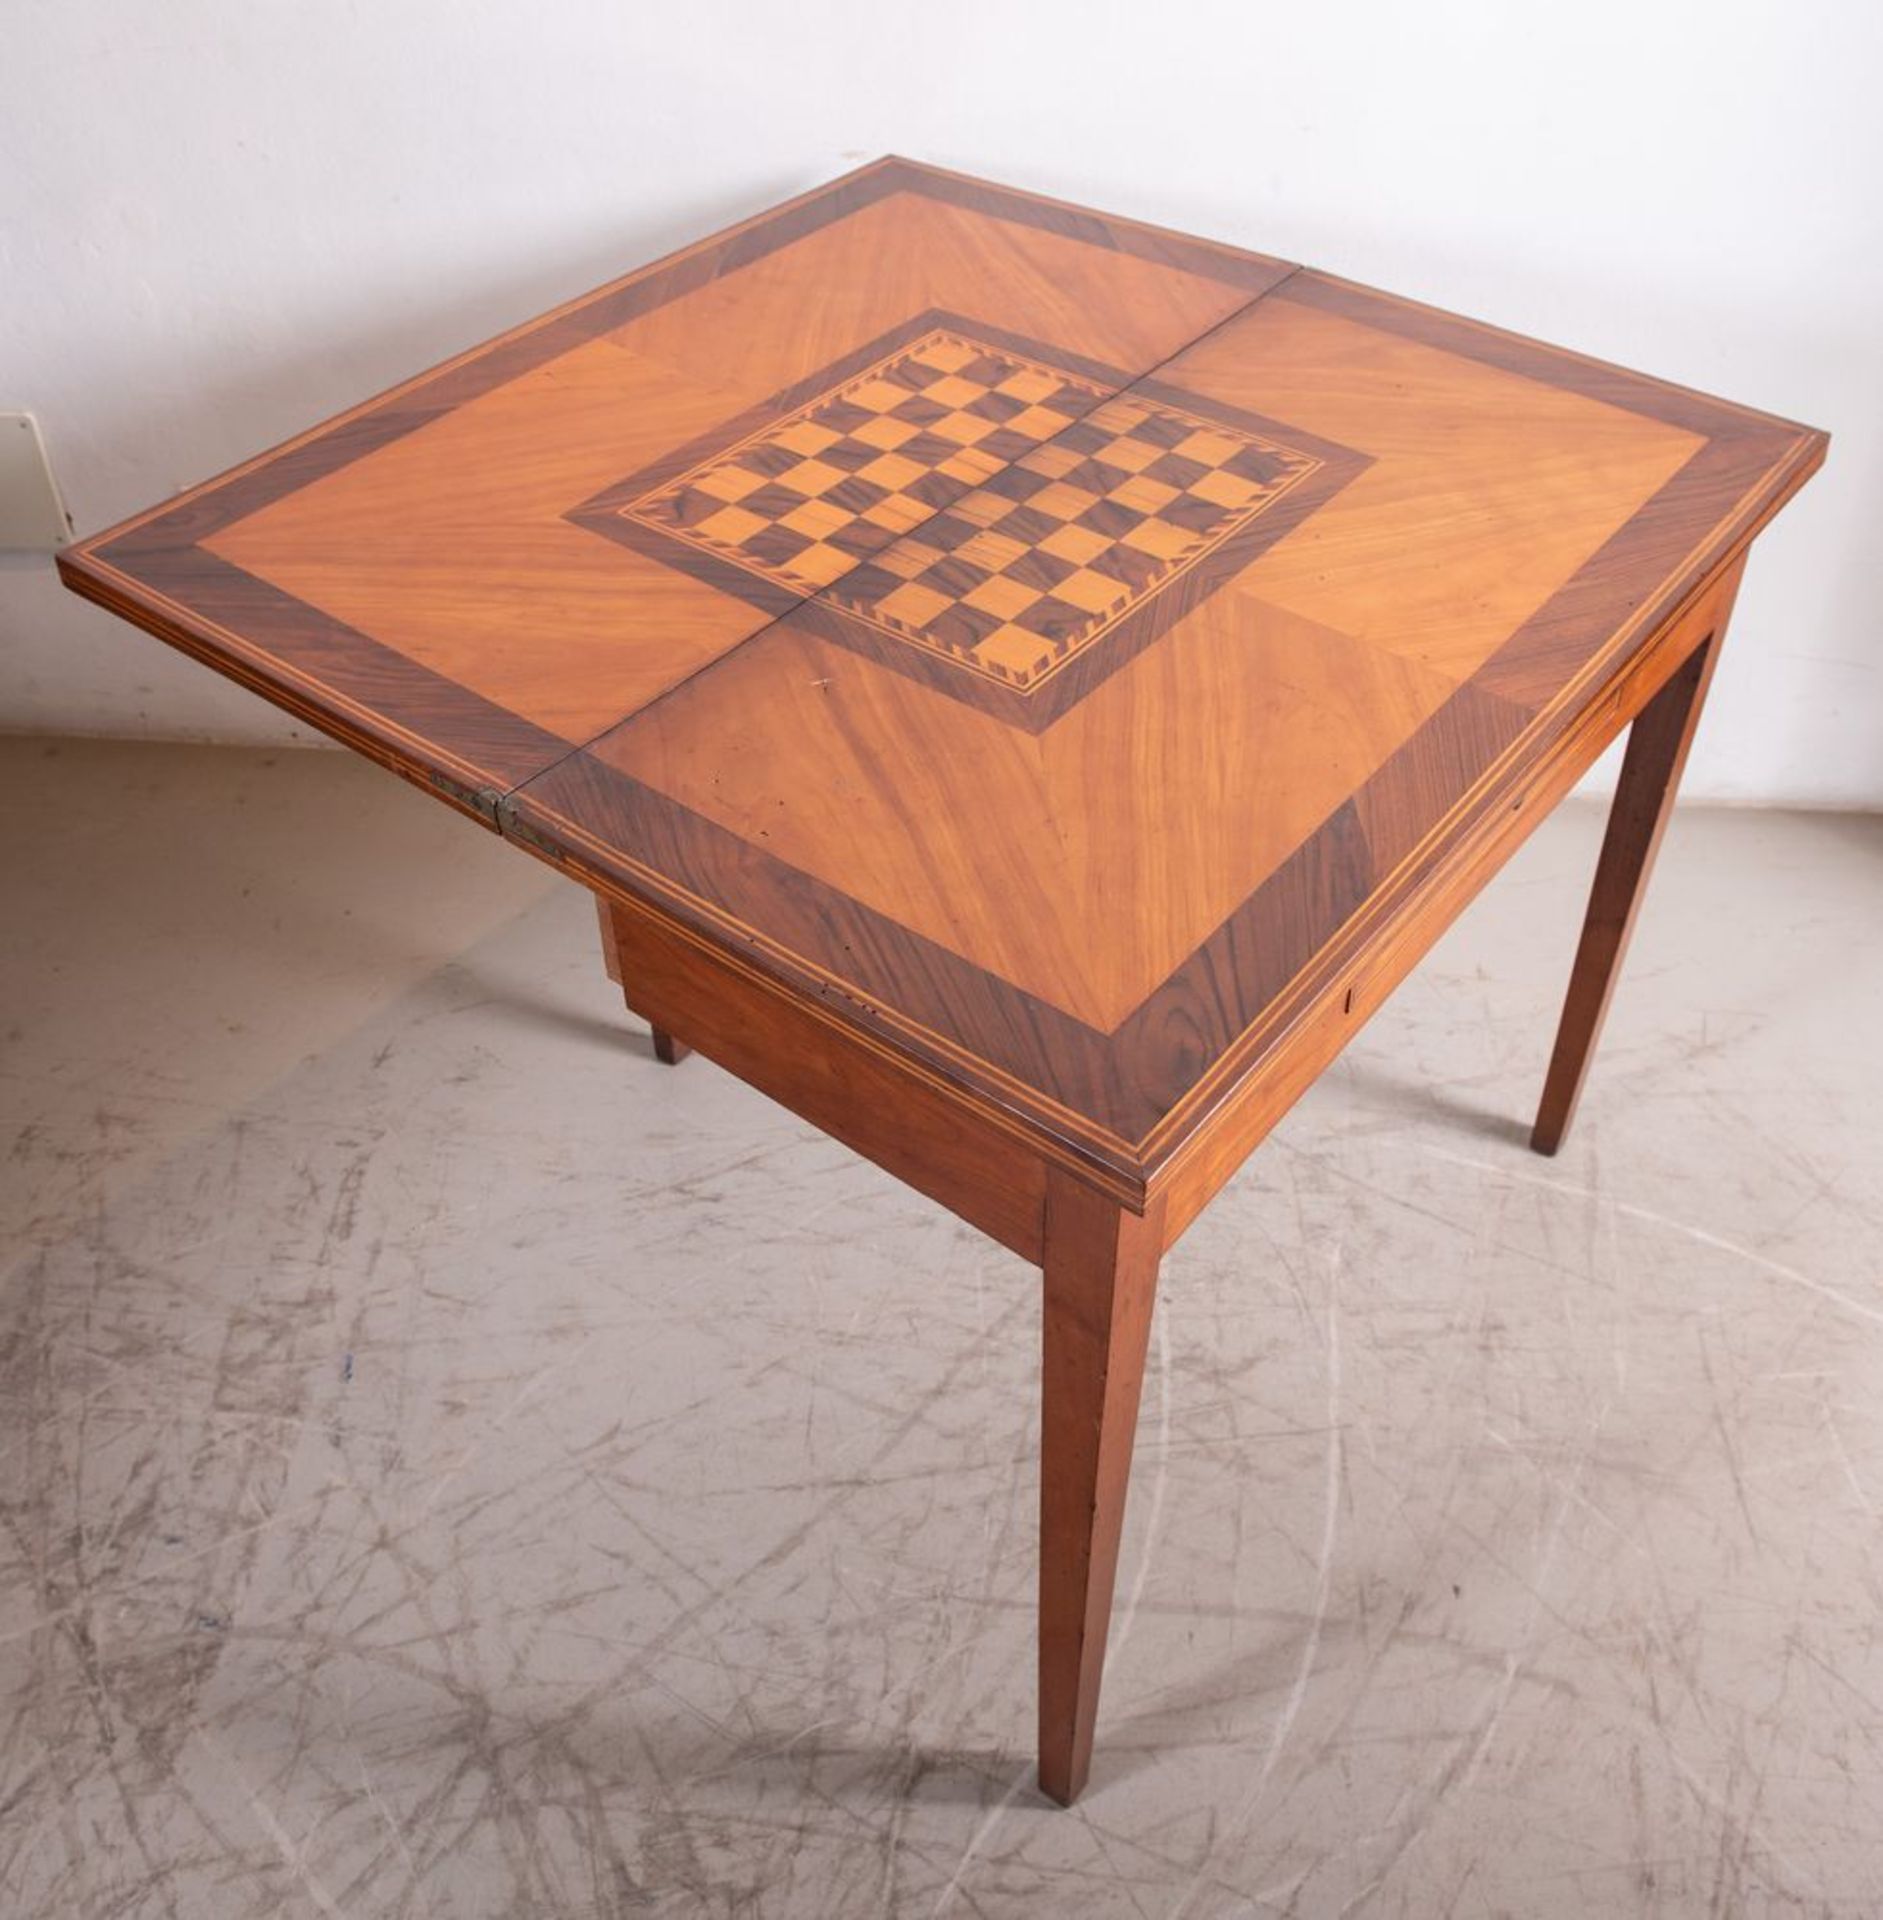 Tavolino da gioco in massello di cliegio con piano lastronato in ciliegio e noce, con motivi a - Bild 2 aus 4